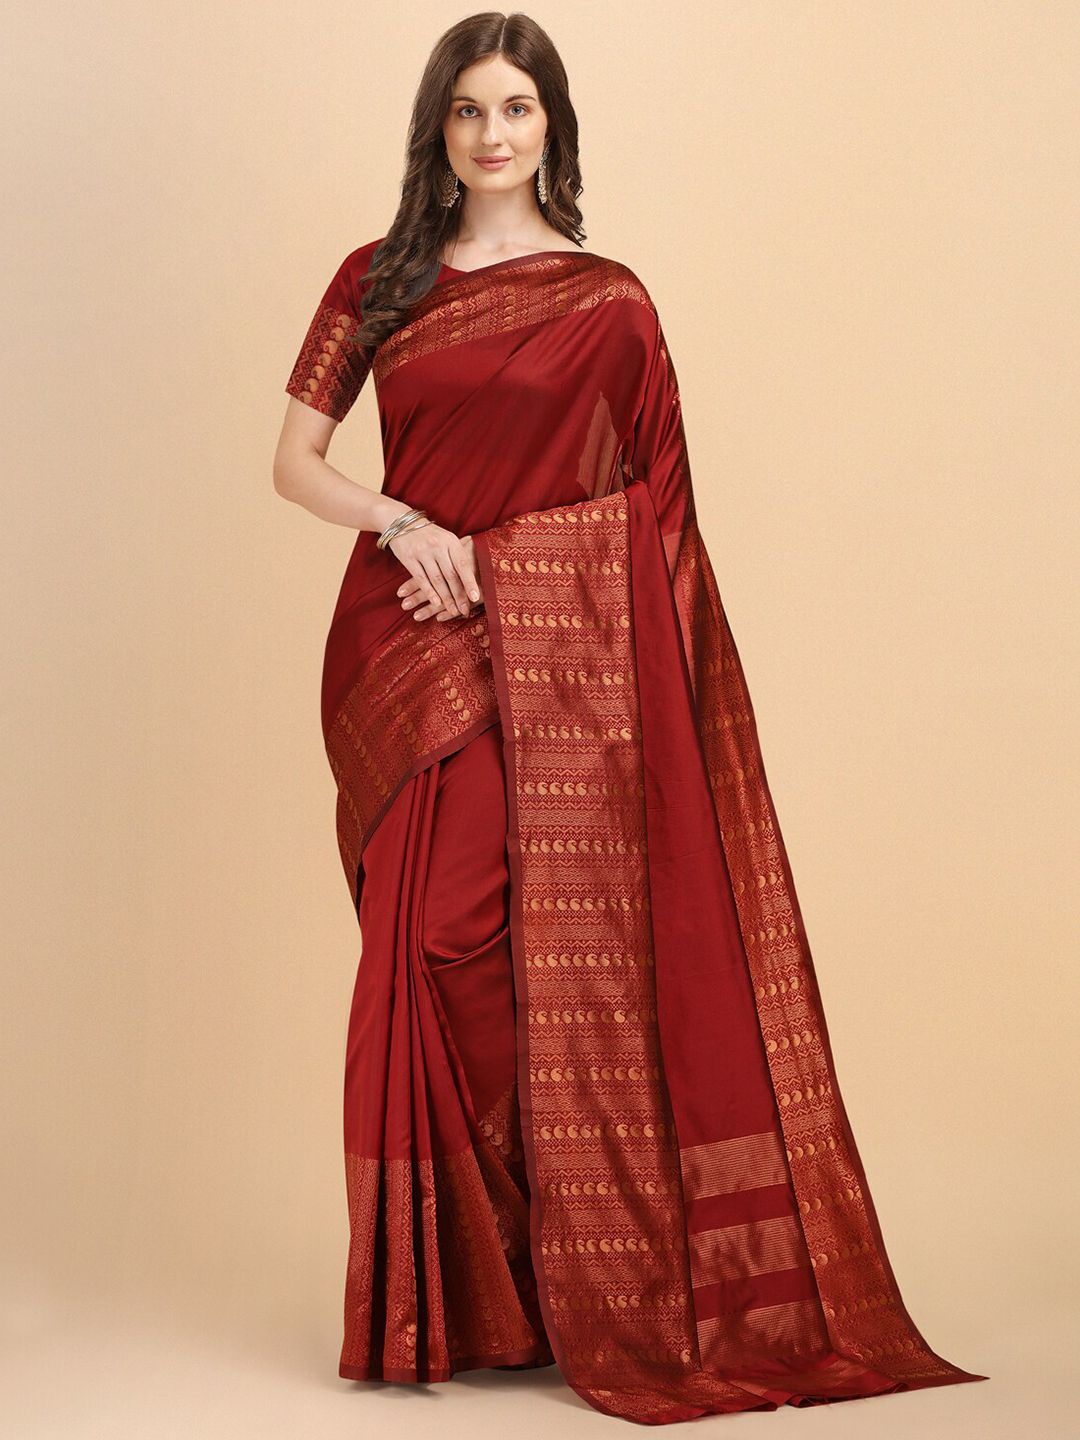 Jinax Maroon & Gold-Toned Woven Design Zari Pure Silk Banarasi Saree Price in India